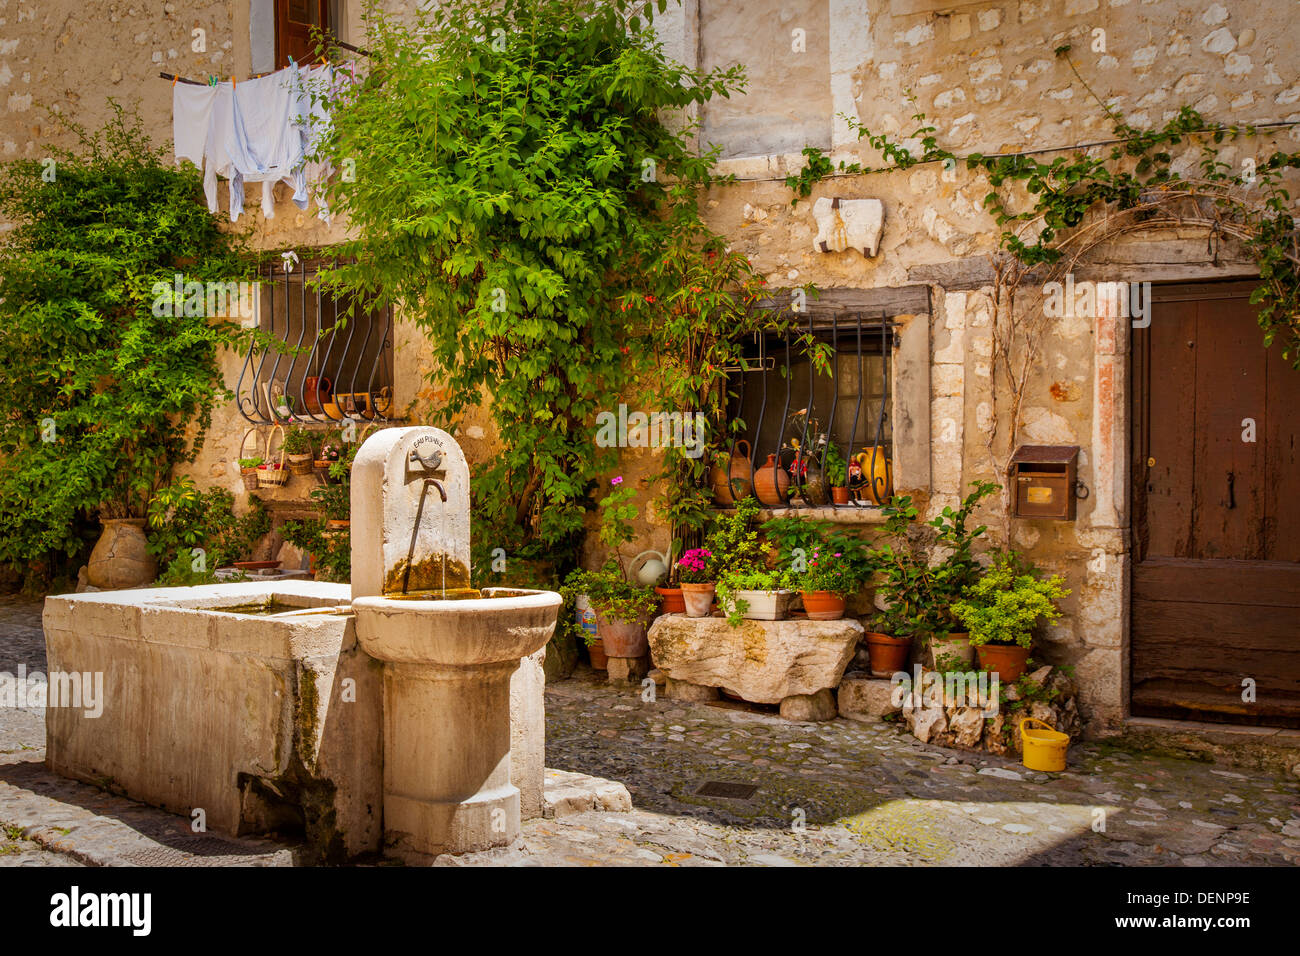 Fontana di acqua e lavabo in pietra nella città medievale di Saint Paul de Vence, Provenza Francia Foto Stock